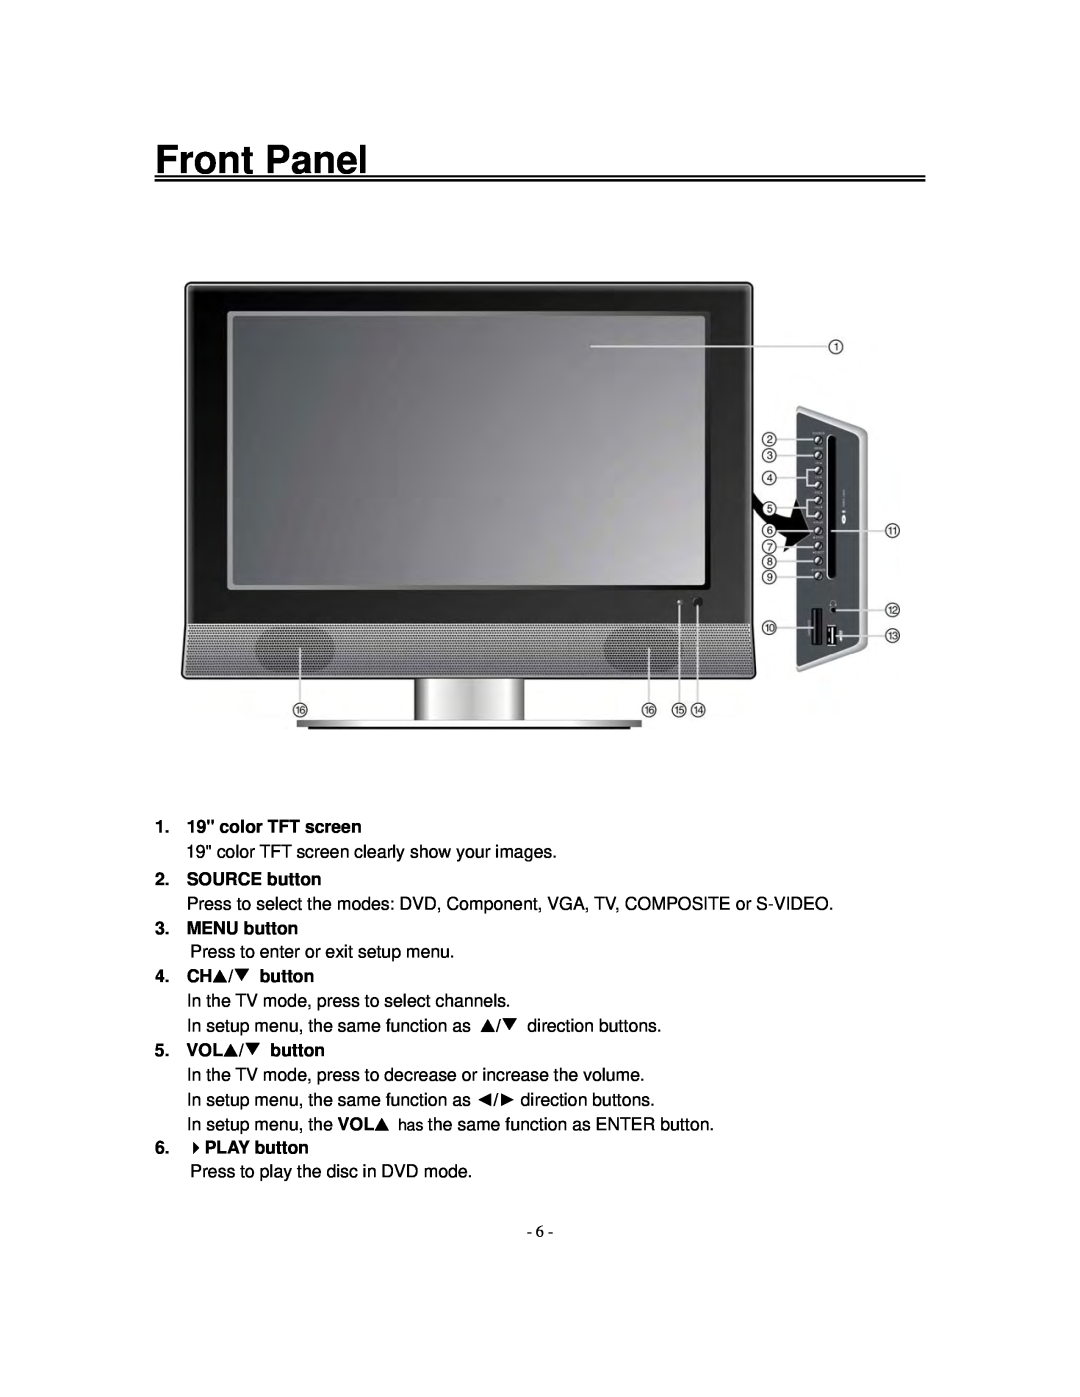 Polaroid FXM-1911C manual Front Panel, 1. 19 color TFT screen, SOURCE button, MENU button, 4. CH/ button, VOL/ button 